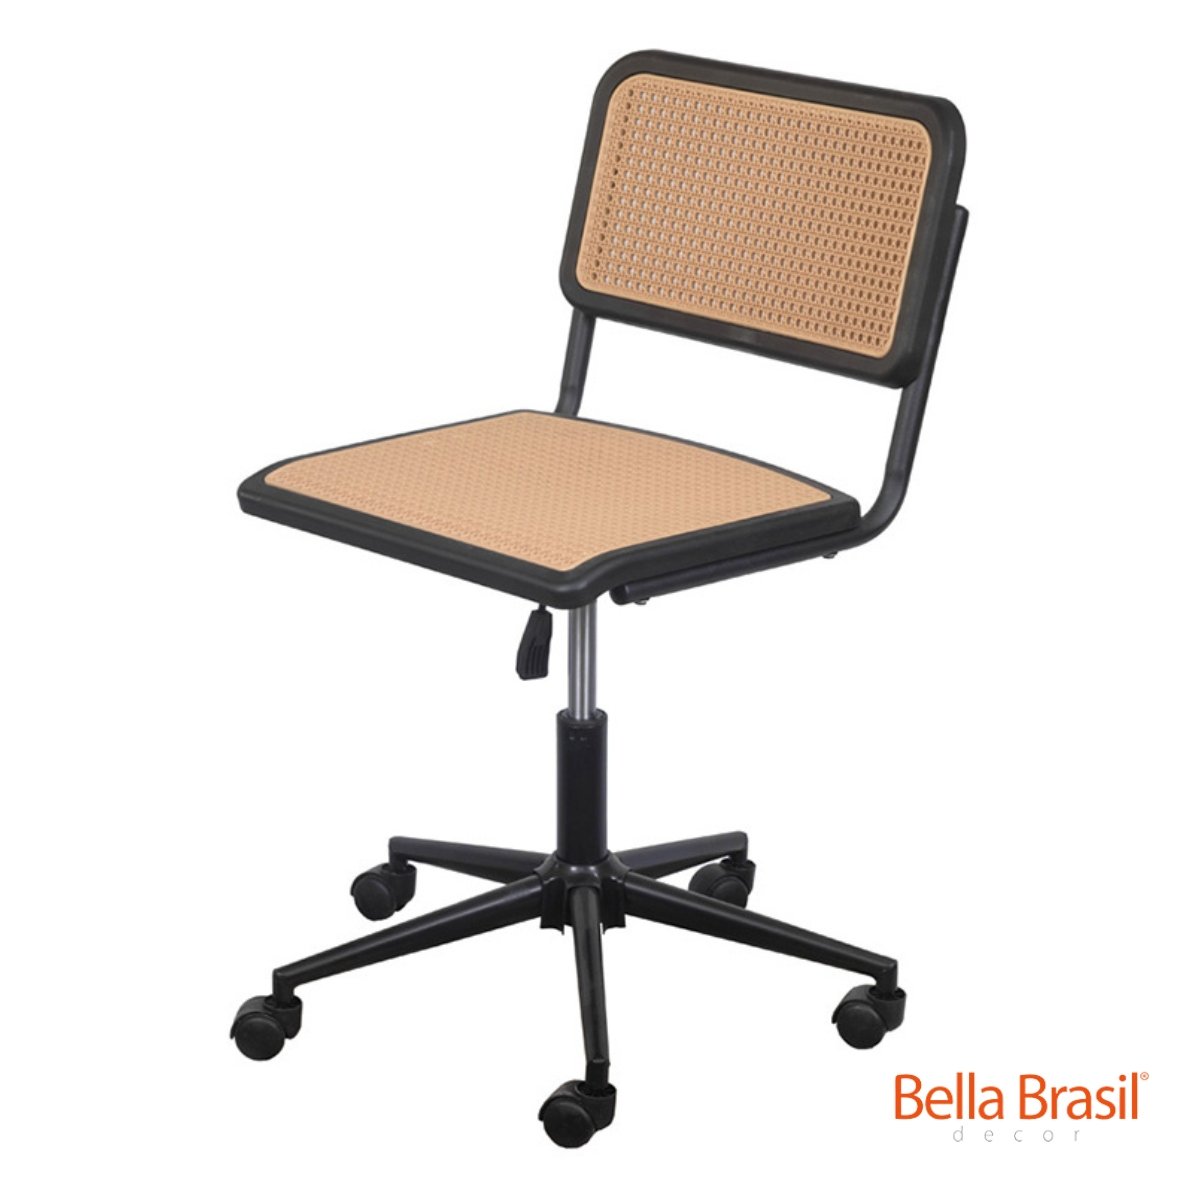 Cadeira Vera Base Giratória sem Braço - Bella Brasil Decor 126 - Bella Brasil Decor Preto/bege